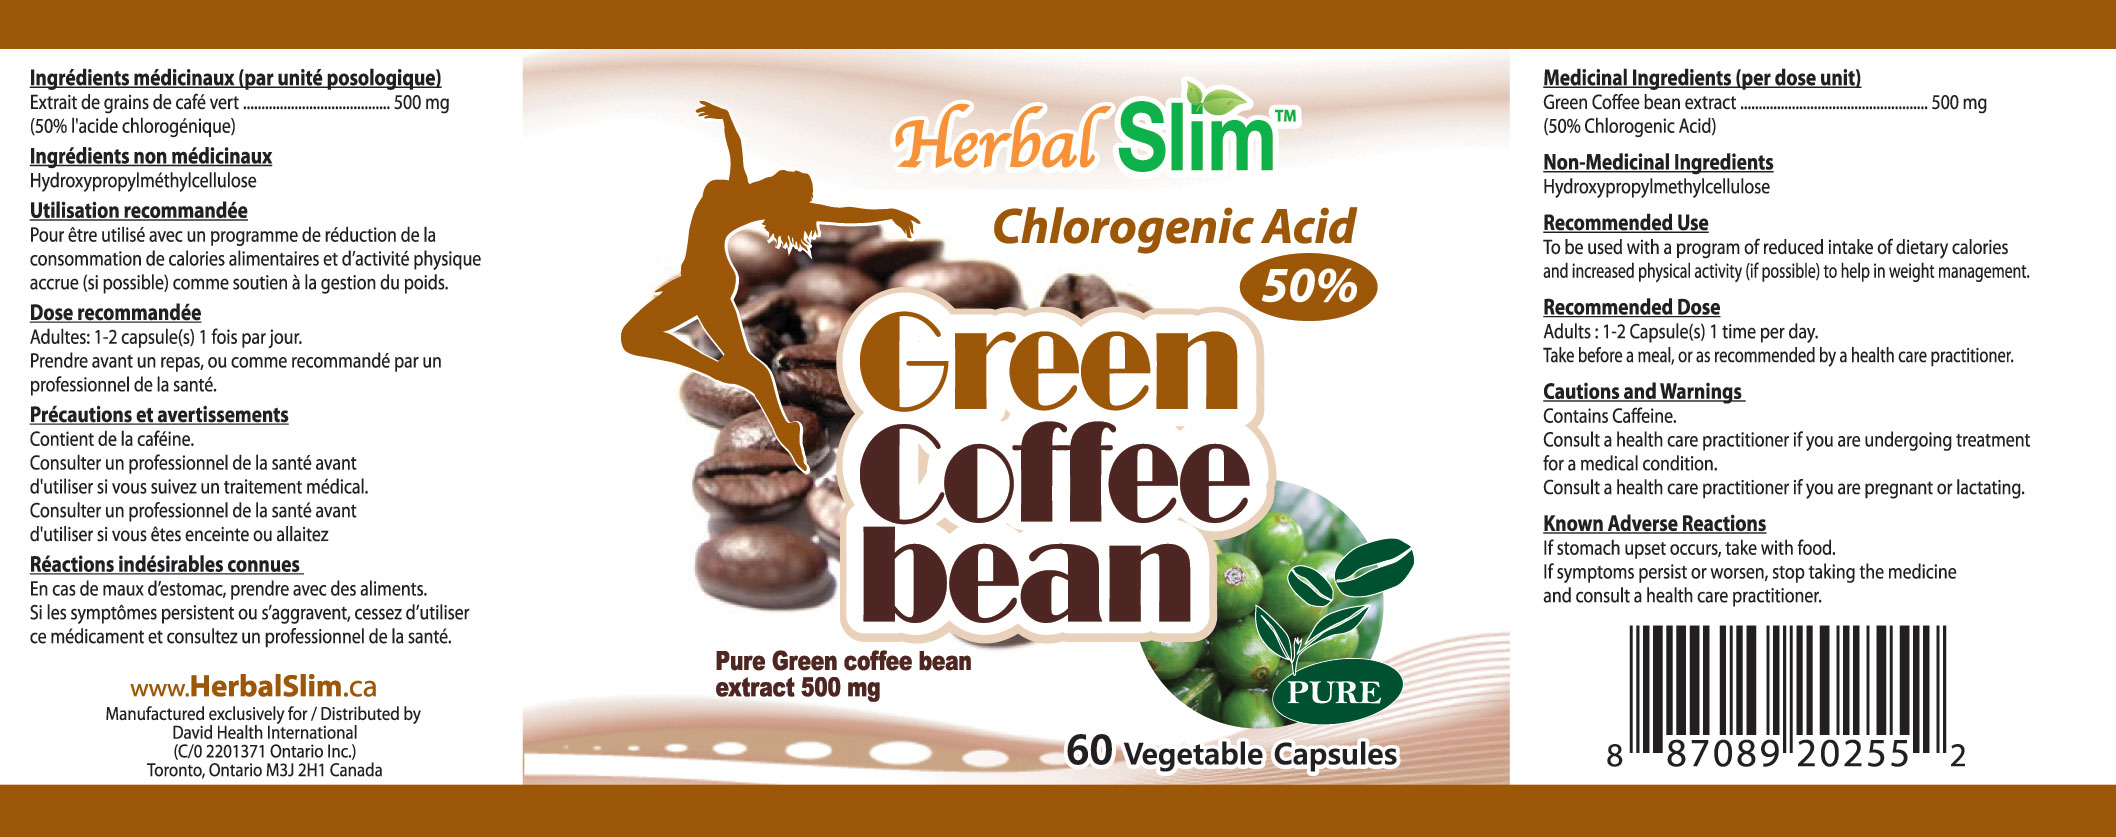 HerbalSlim GREEN COFFEE BEAN (50% CHLOROGENIC ACID)